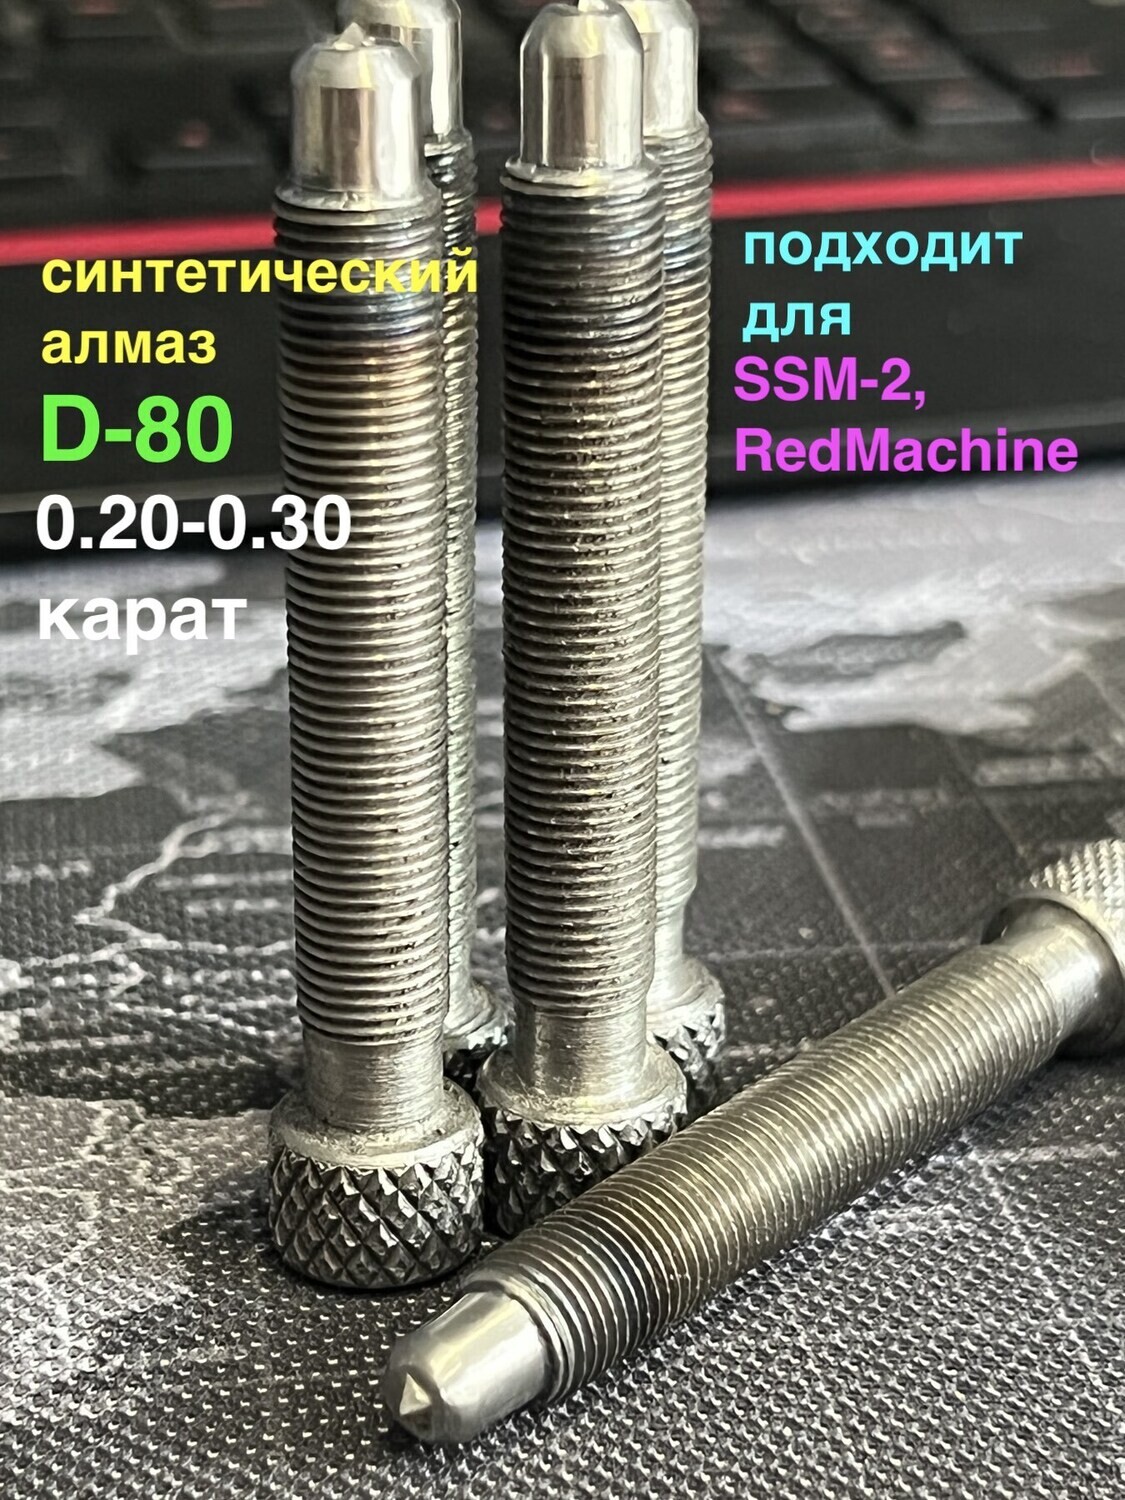 Алмаз D-80 для SSM-2/RedMachine | шип 0,20-0,30ct (В НАЛИЧИИ)